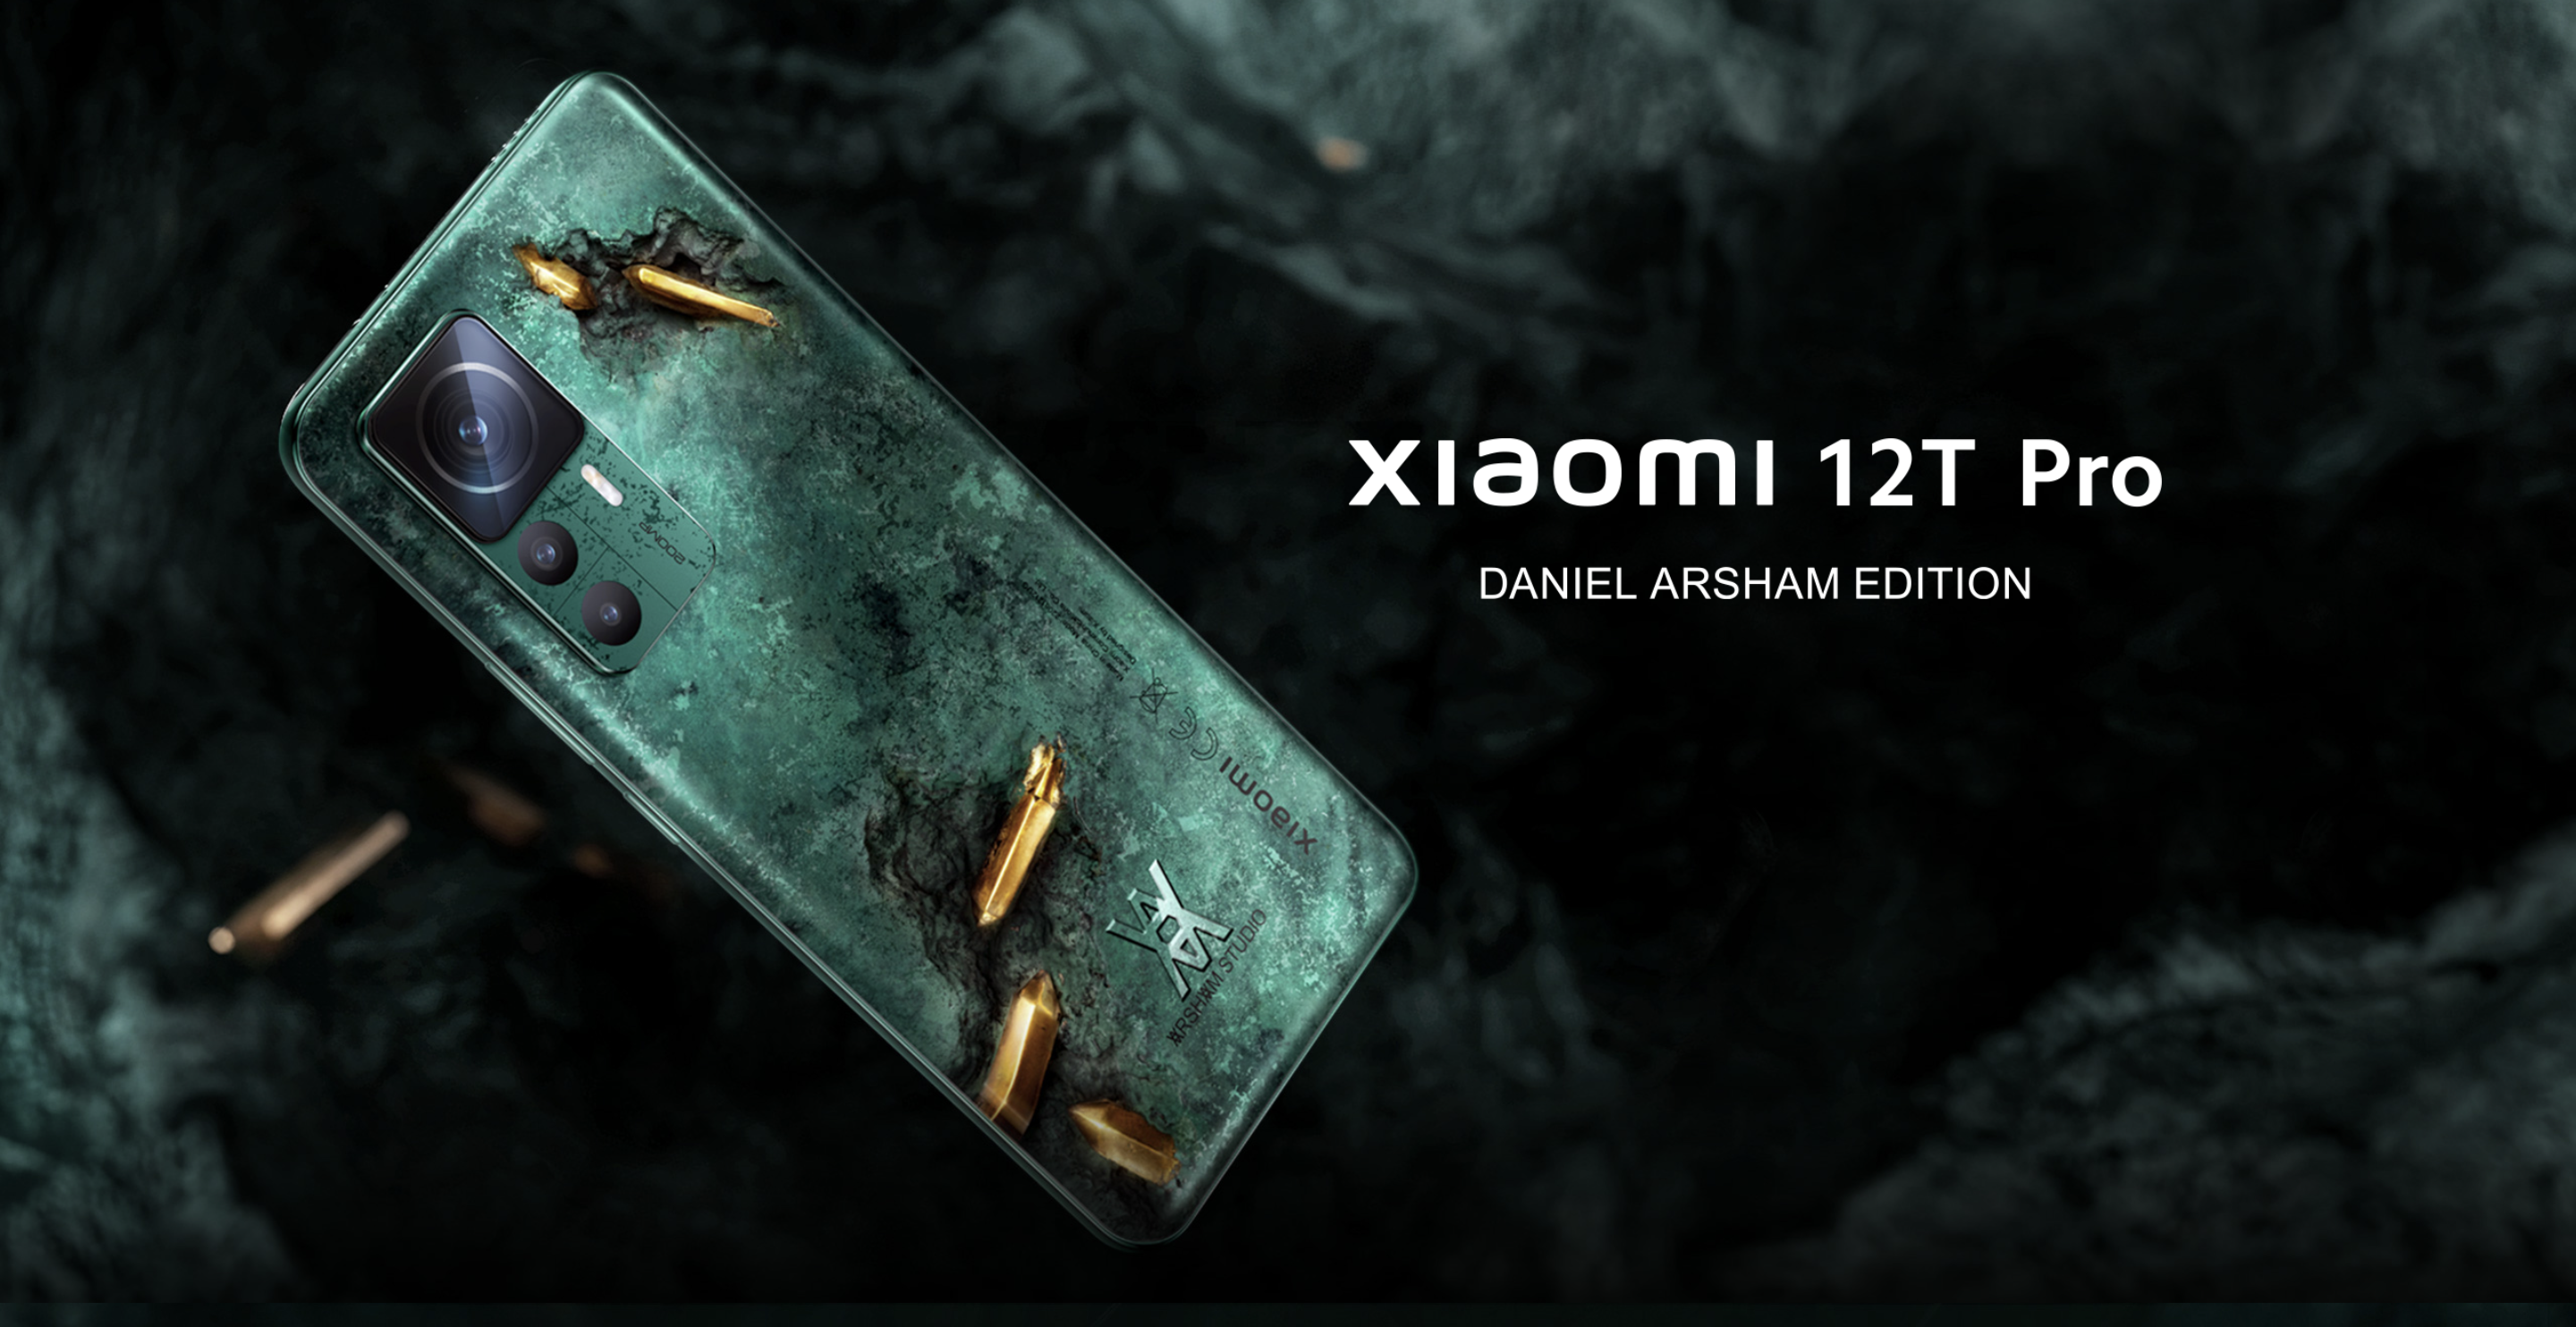 Seulement 2 000 unités : Le Xiaomi 12T Pro Daniel Arsham Limited Edition est déjà disponible en précommande en Europe.